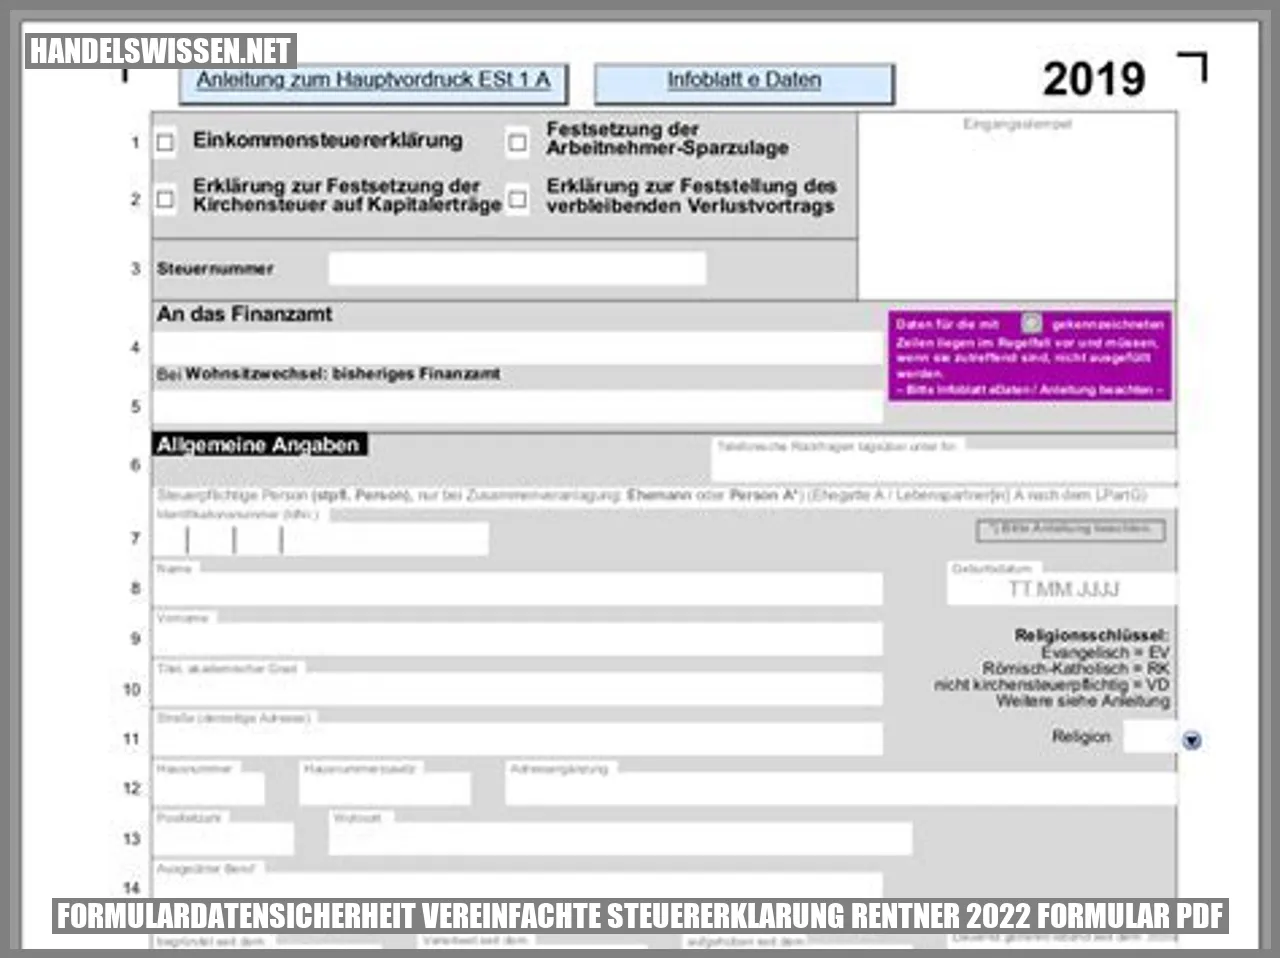 Formulardatensicherheit vereinfachte steuererklarung rentner 2022 formular pdf